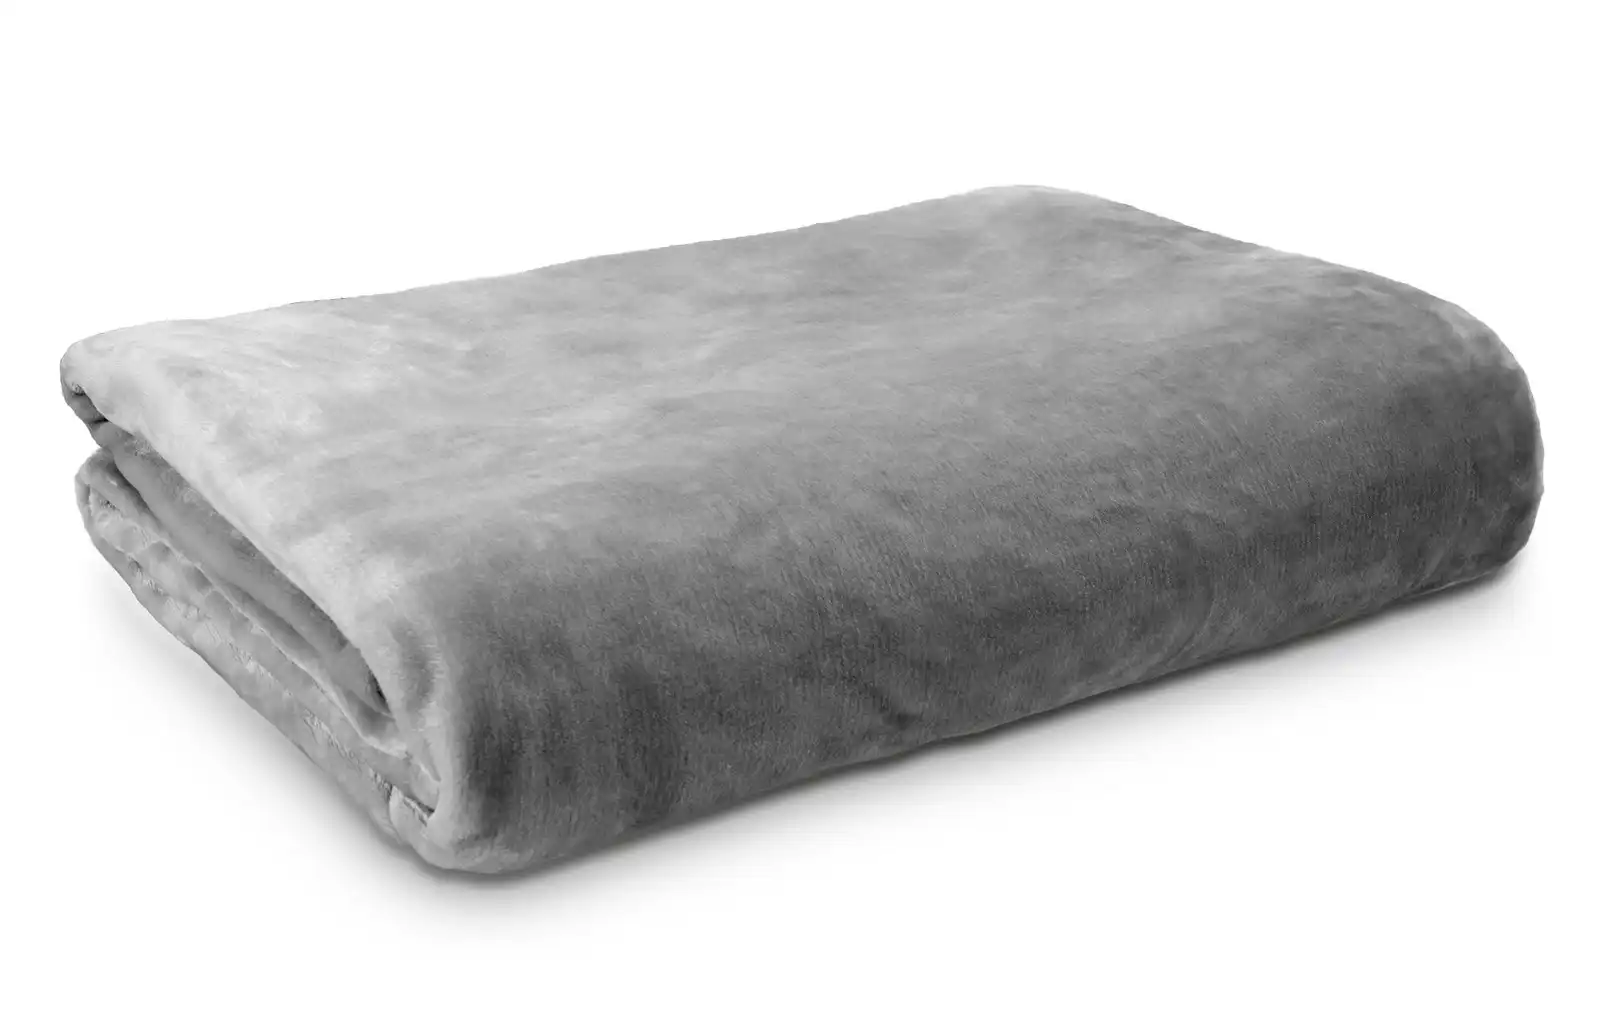 Ardor Boudoir King Single Bed Lucia Luxury Home Plush Velvet Blanket Silver